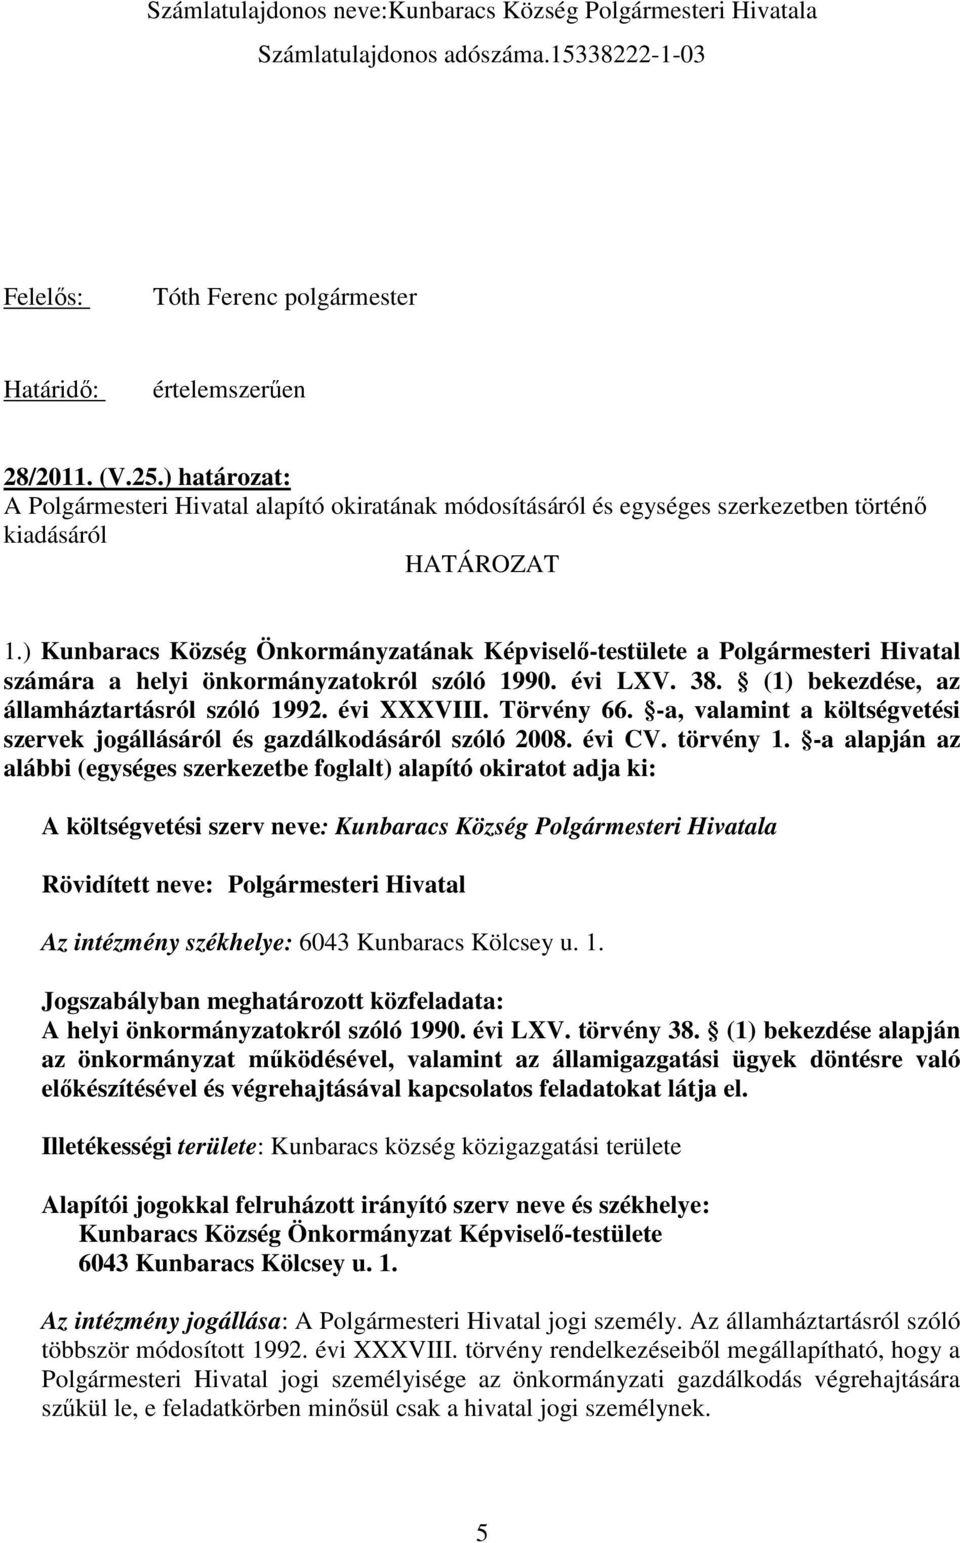 ) Kunbaracs Község Önkormányzatának Képviselı-testülete a Polgármesteri Hivatal számára a helyi önkormányzatokról szóló 1990. évi LXV. 38. (1) bekezdése, az államháztartásról szóló 1992. évi XXXVIII.